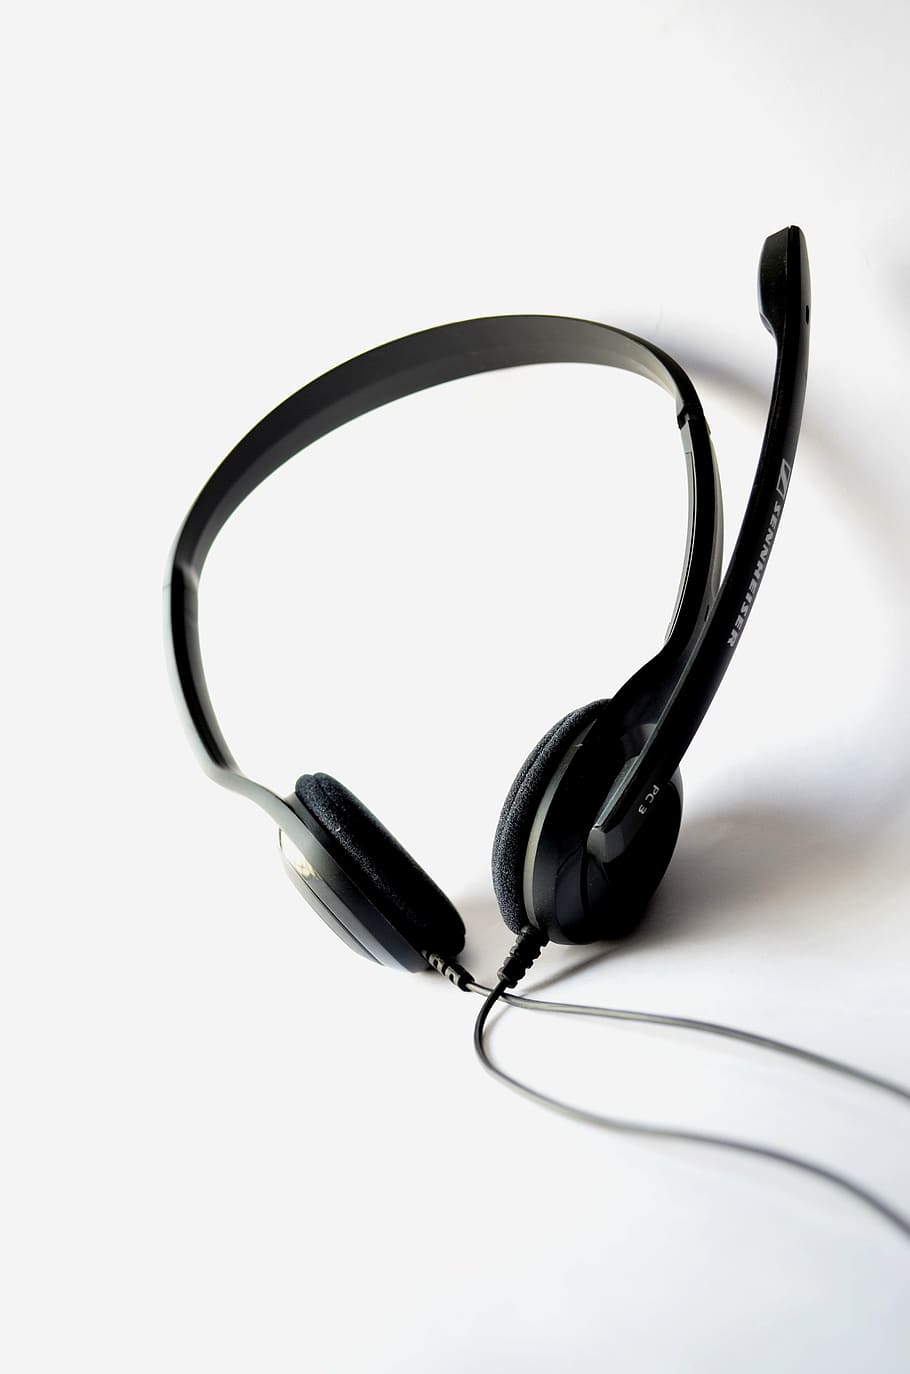 auriculares con cable negro, auriculares, micrófono, audio, tecnología, comunicación, difusión, voz, grabación, fondo blanco